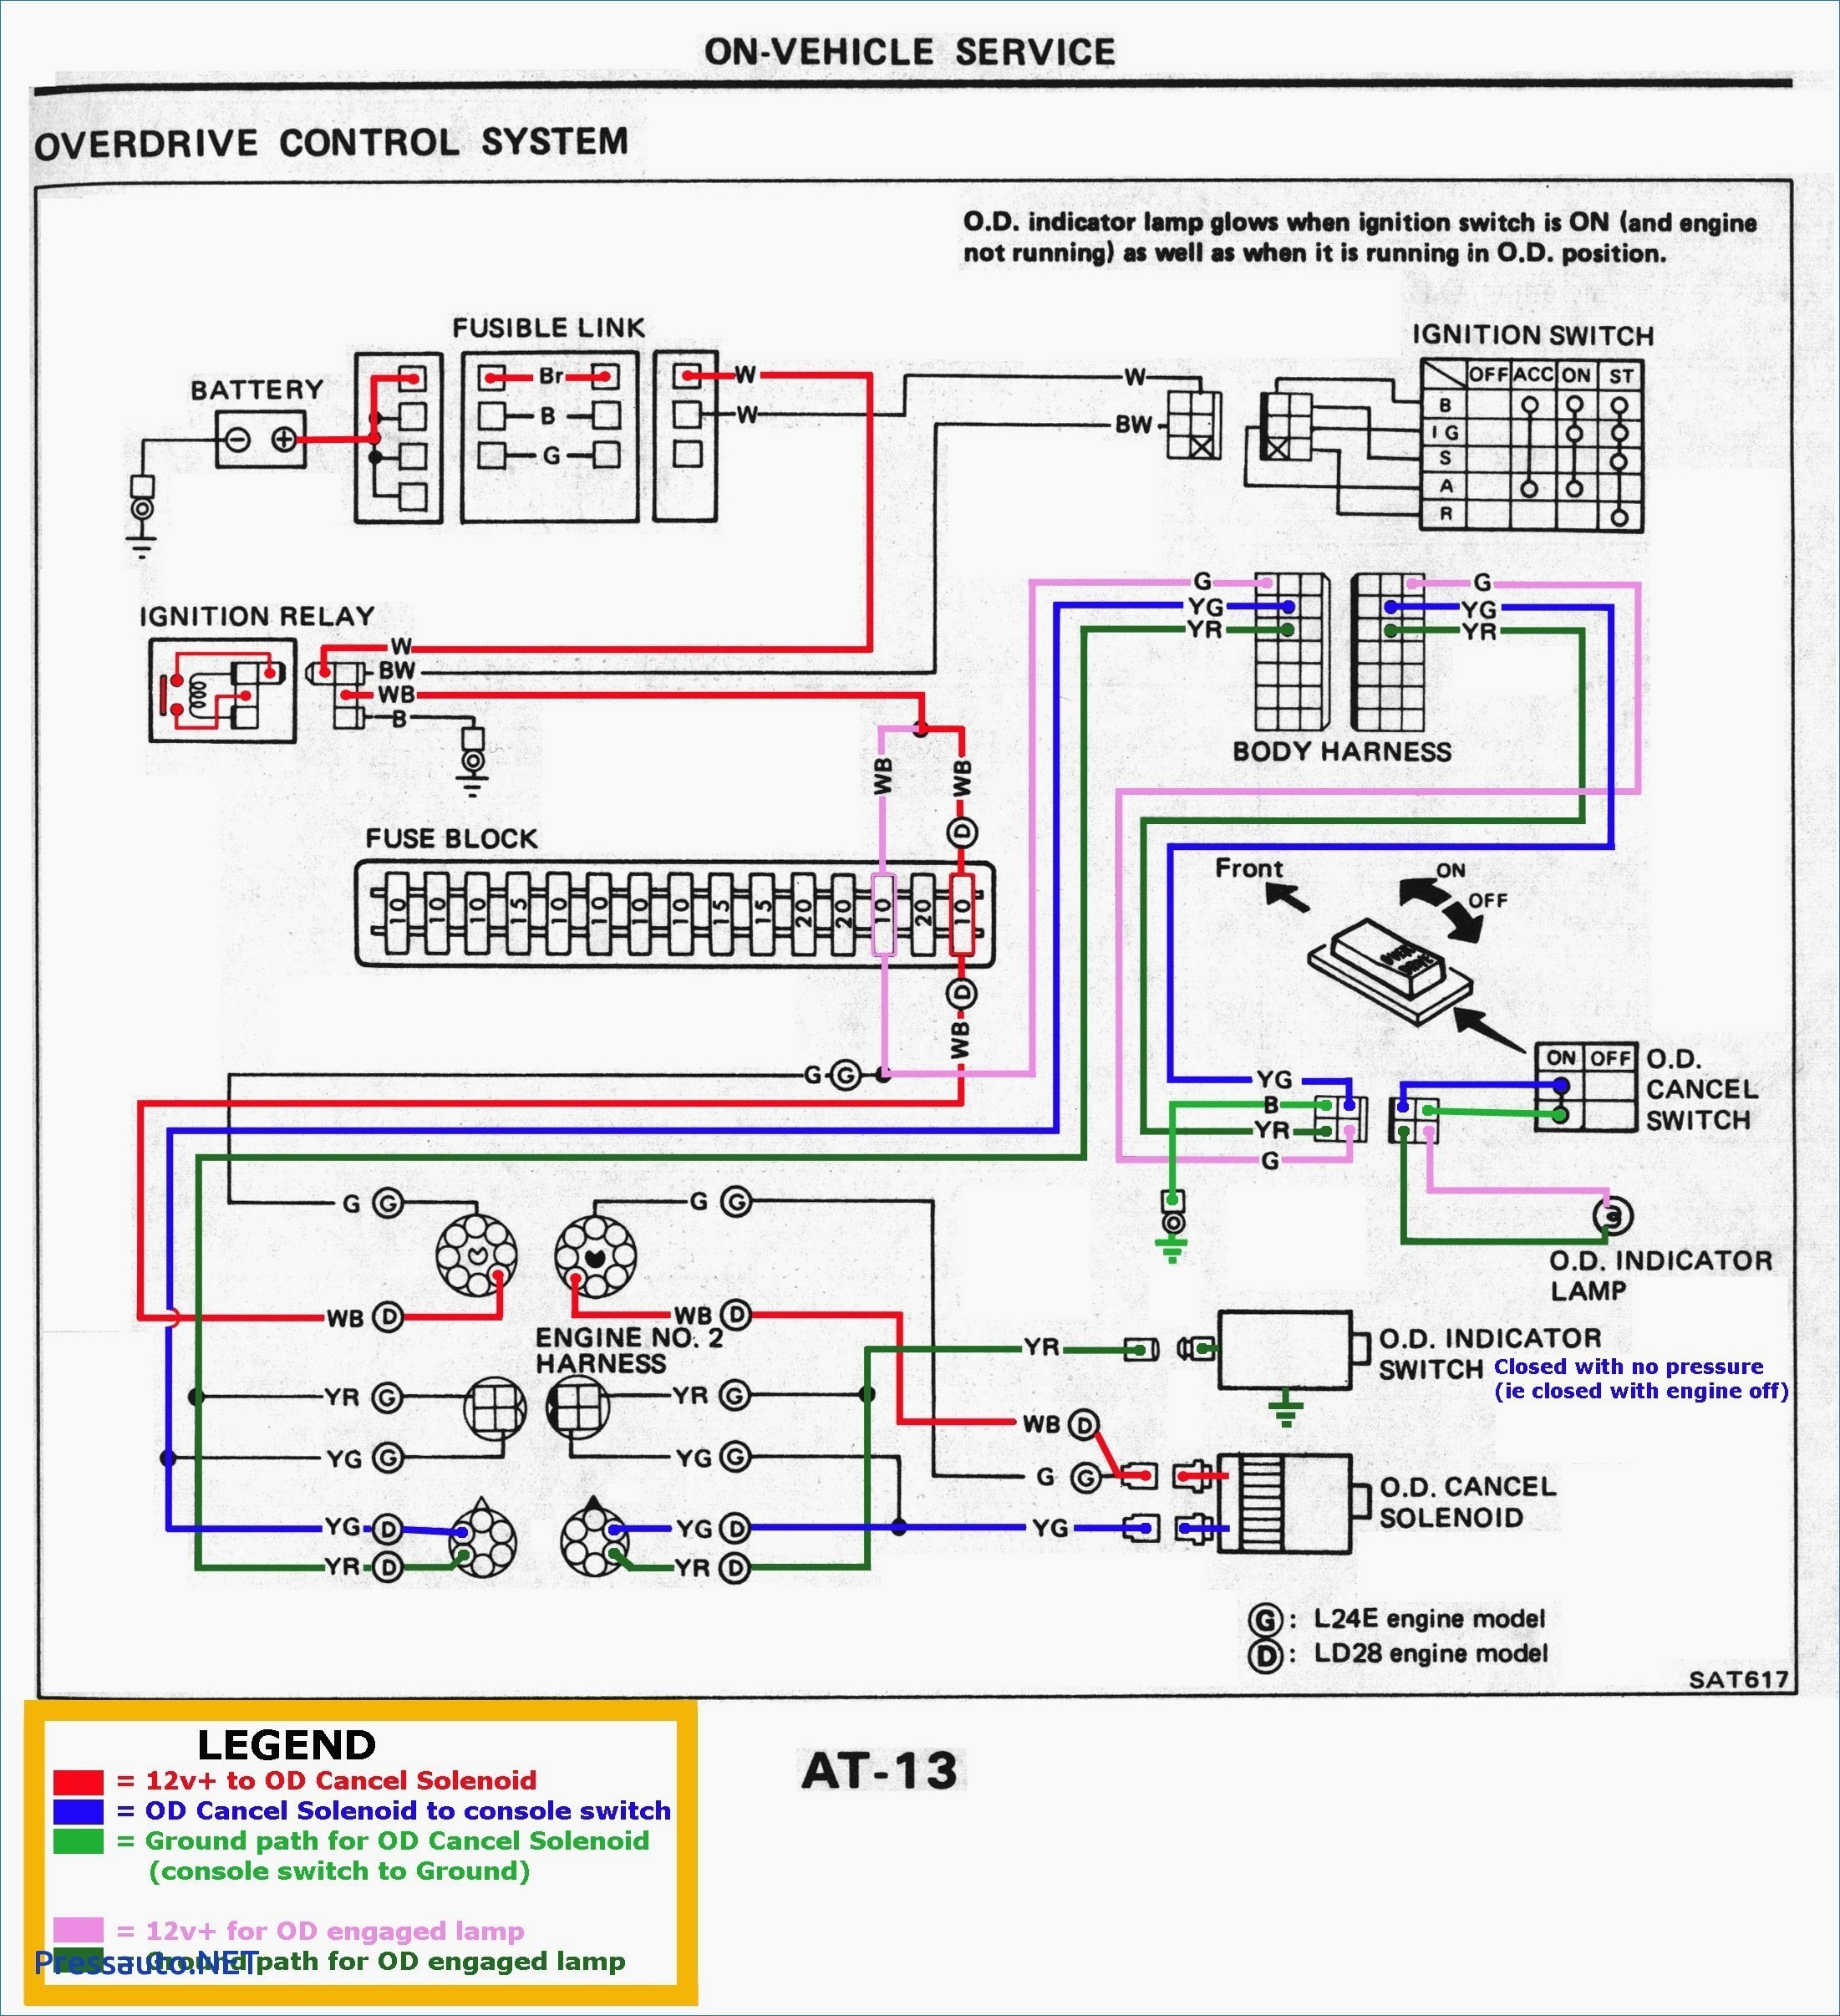 2005 Saturn Ion Engine Diagram Saturn Ion Engine Diagram Wiring Diagram Datasource Of 2005 Saturn Ion Engine Diagram